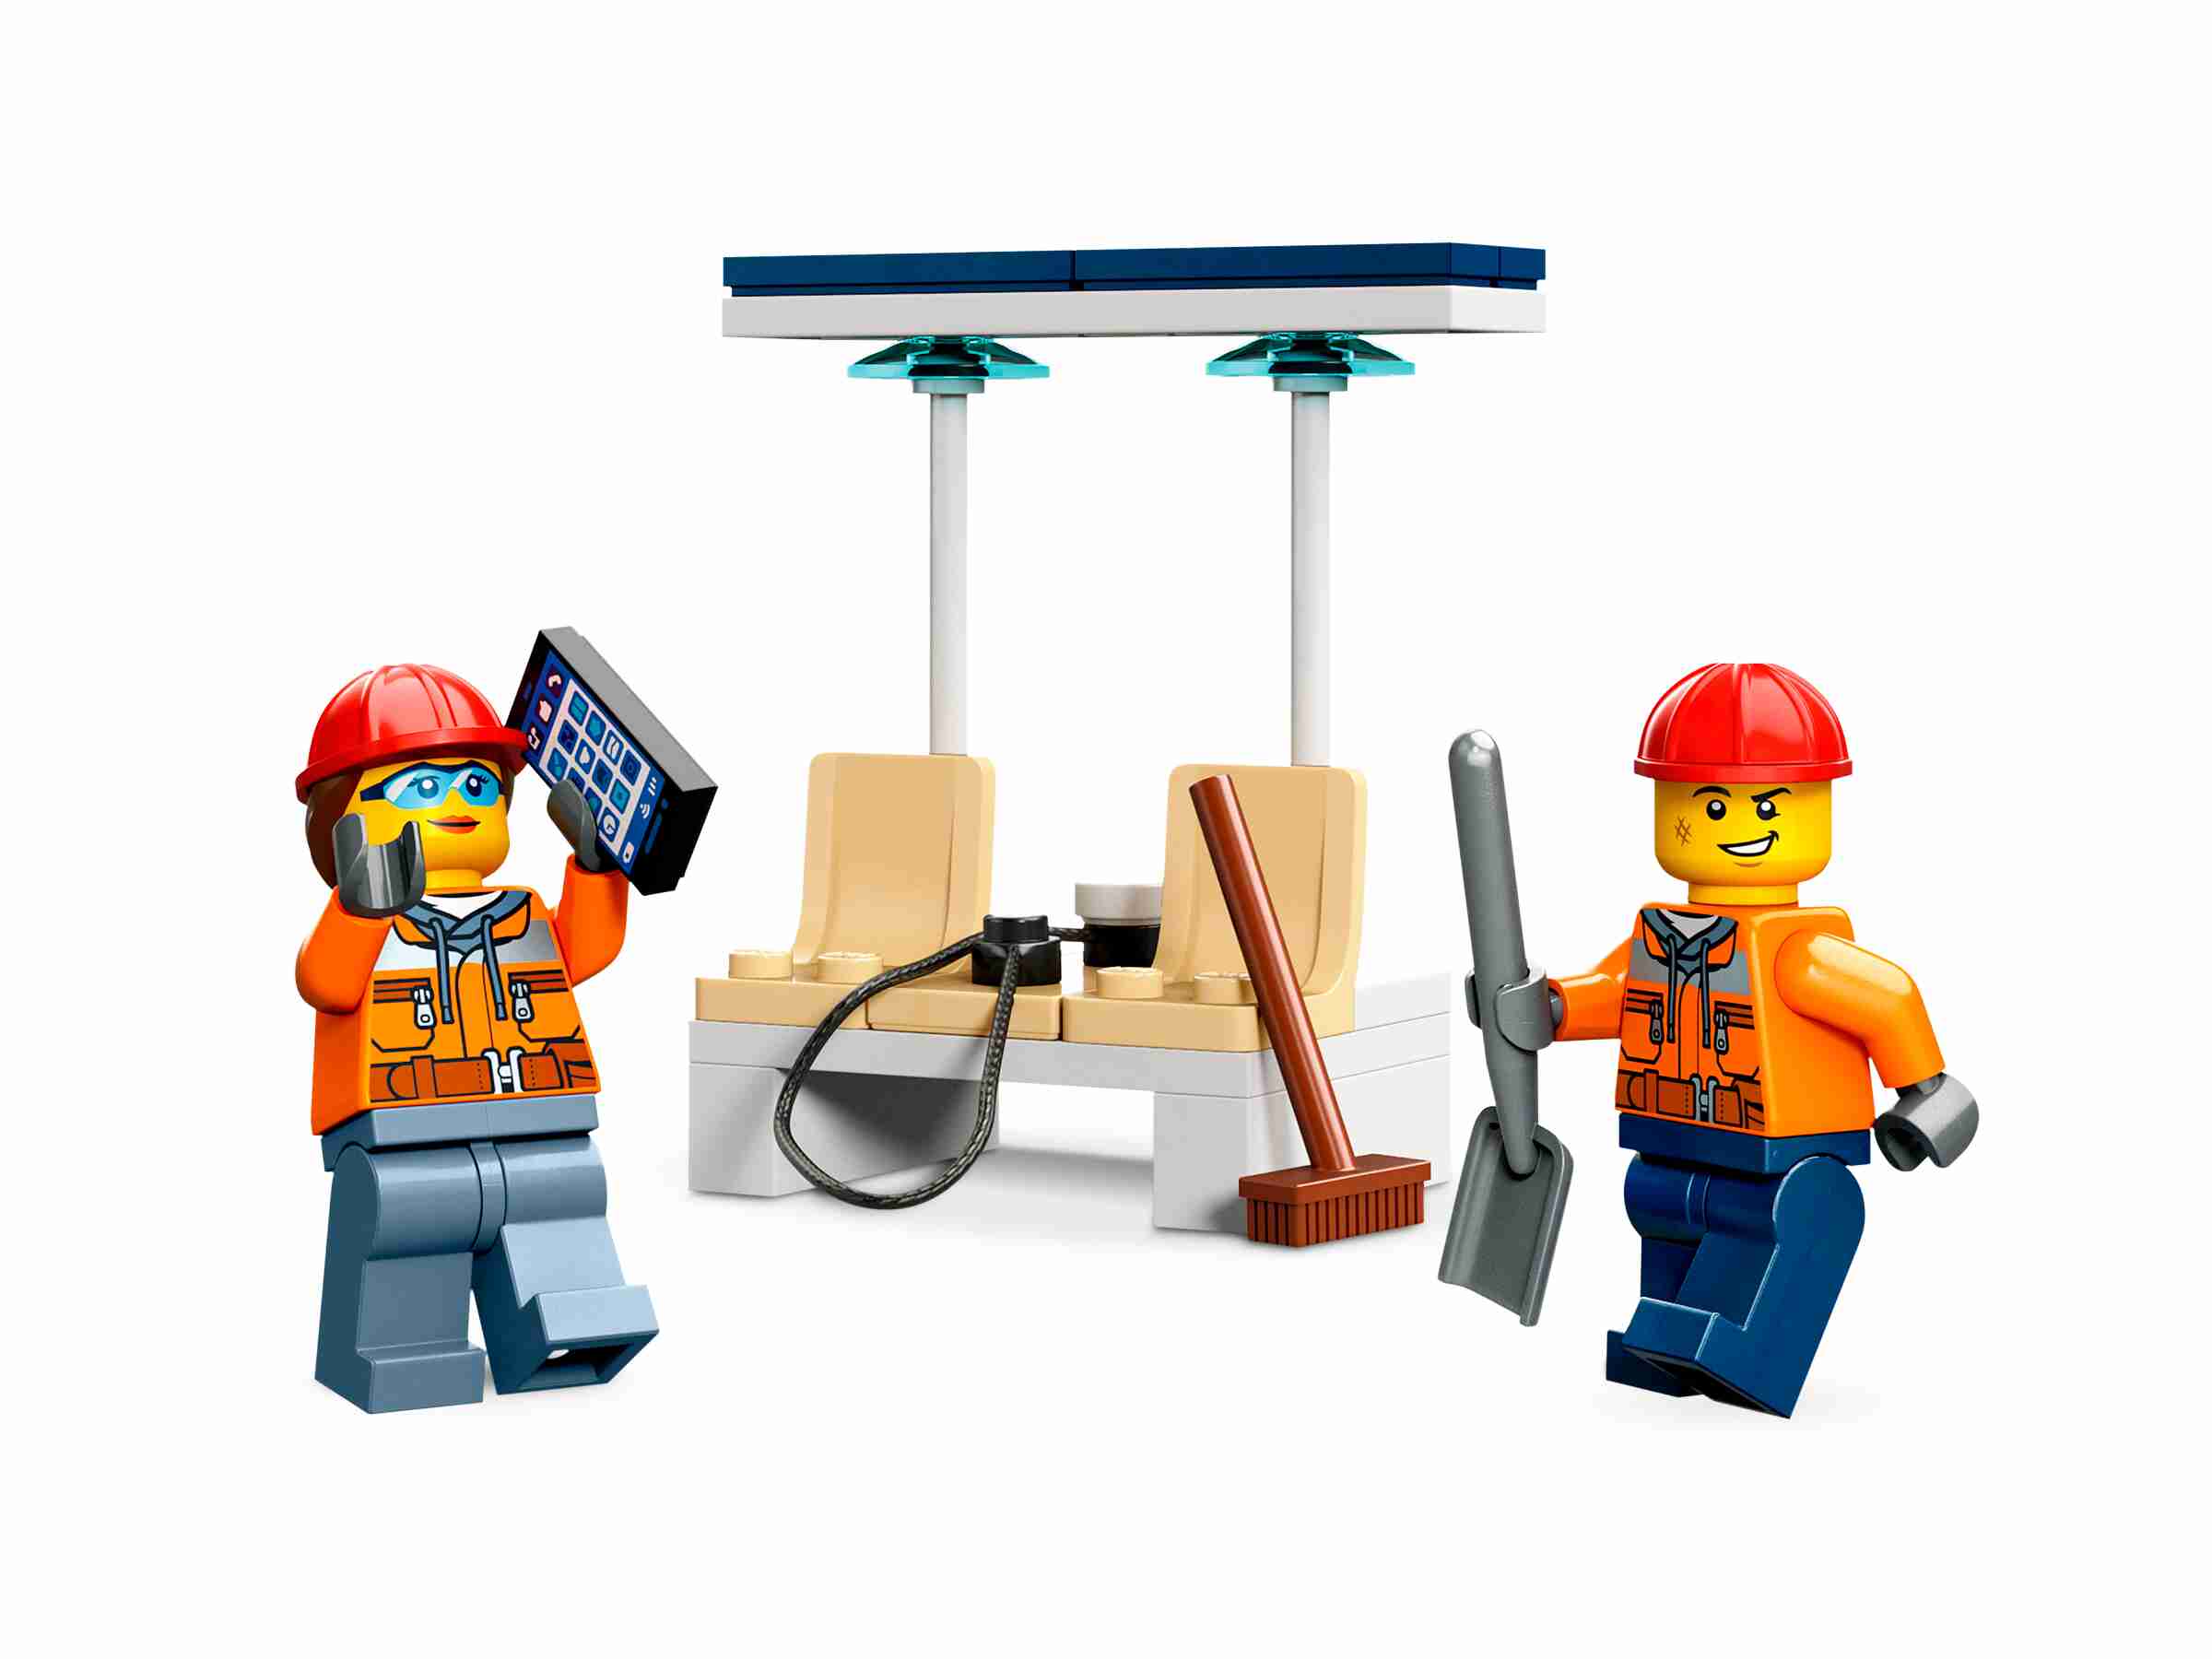 LEGO 60385 City Radlader, austauschbaren Anbaugeräten, Starken Fahrzeuge